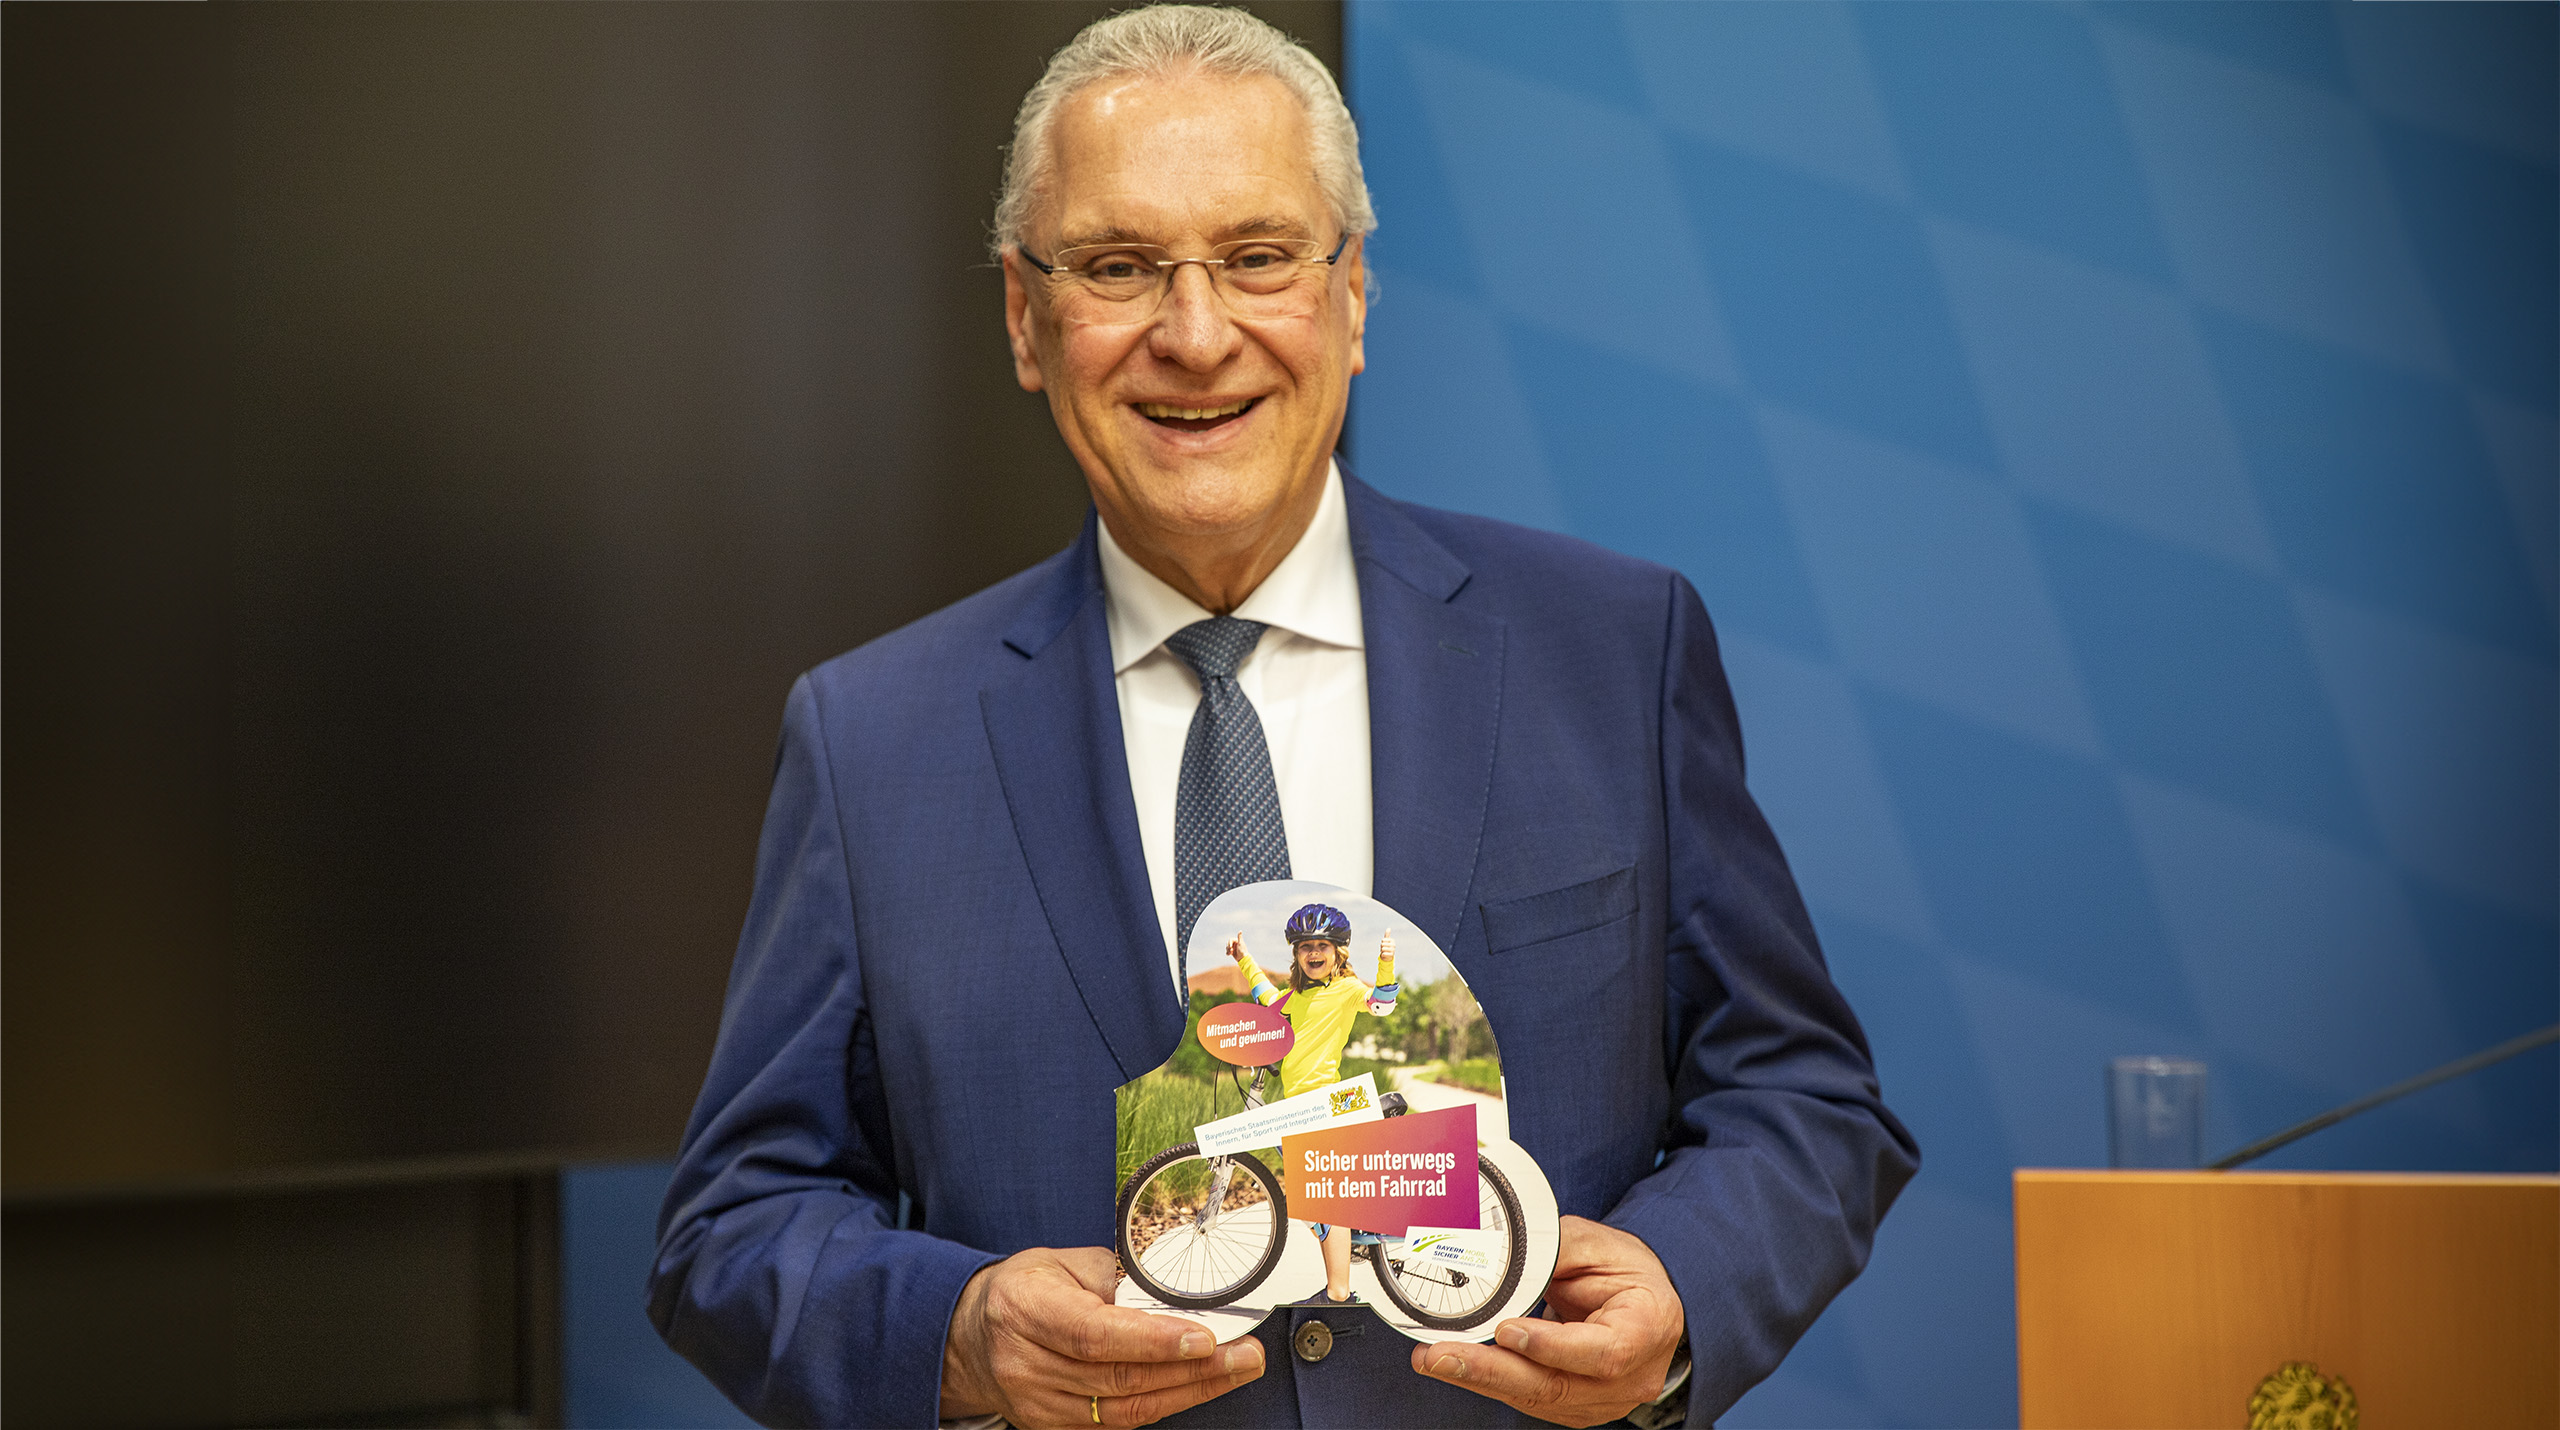 Innenminister Joachim Herrmann präsentiert die aktuelle Gewinnspiel-Broschüre unter dem Motto "Sicher unterwegs mit dem Fahrrad"